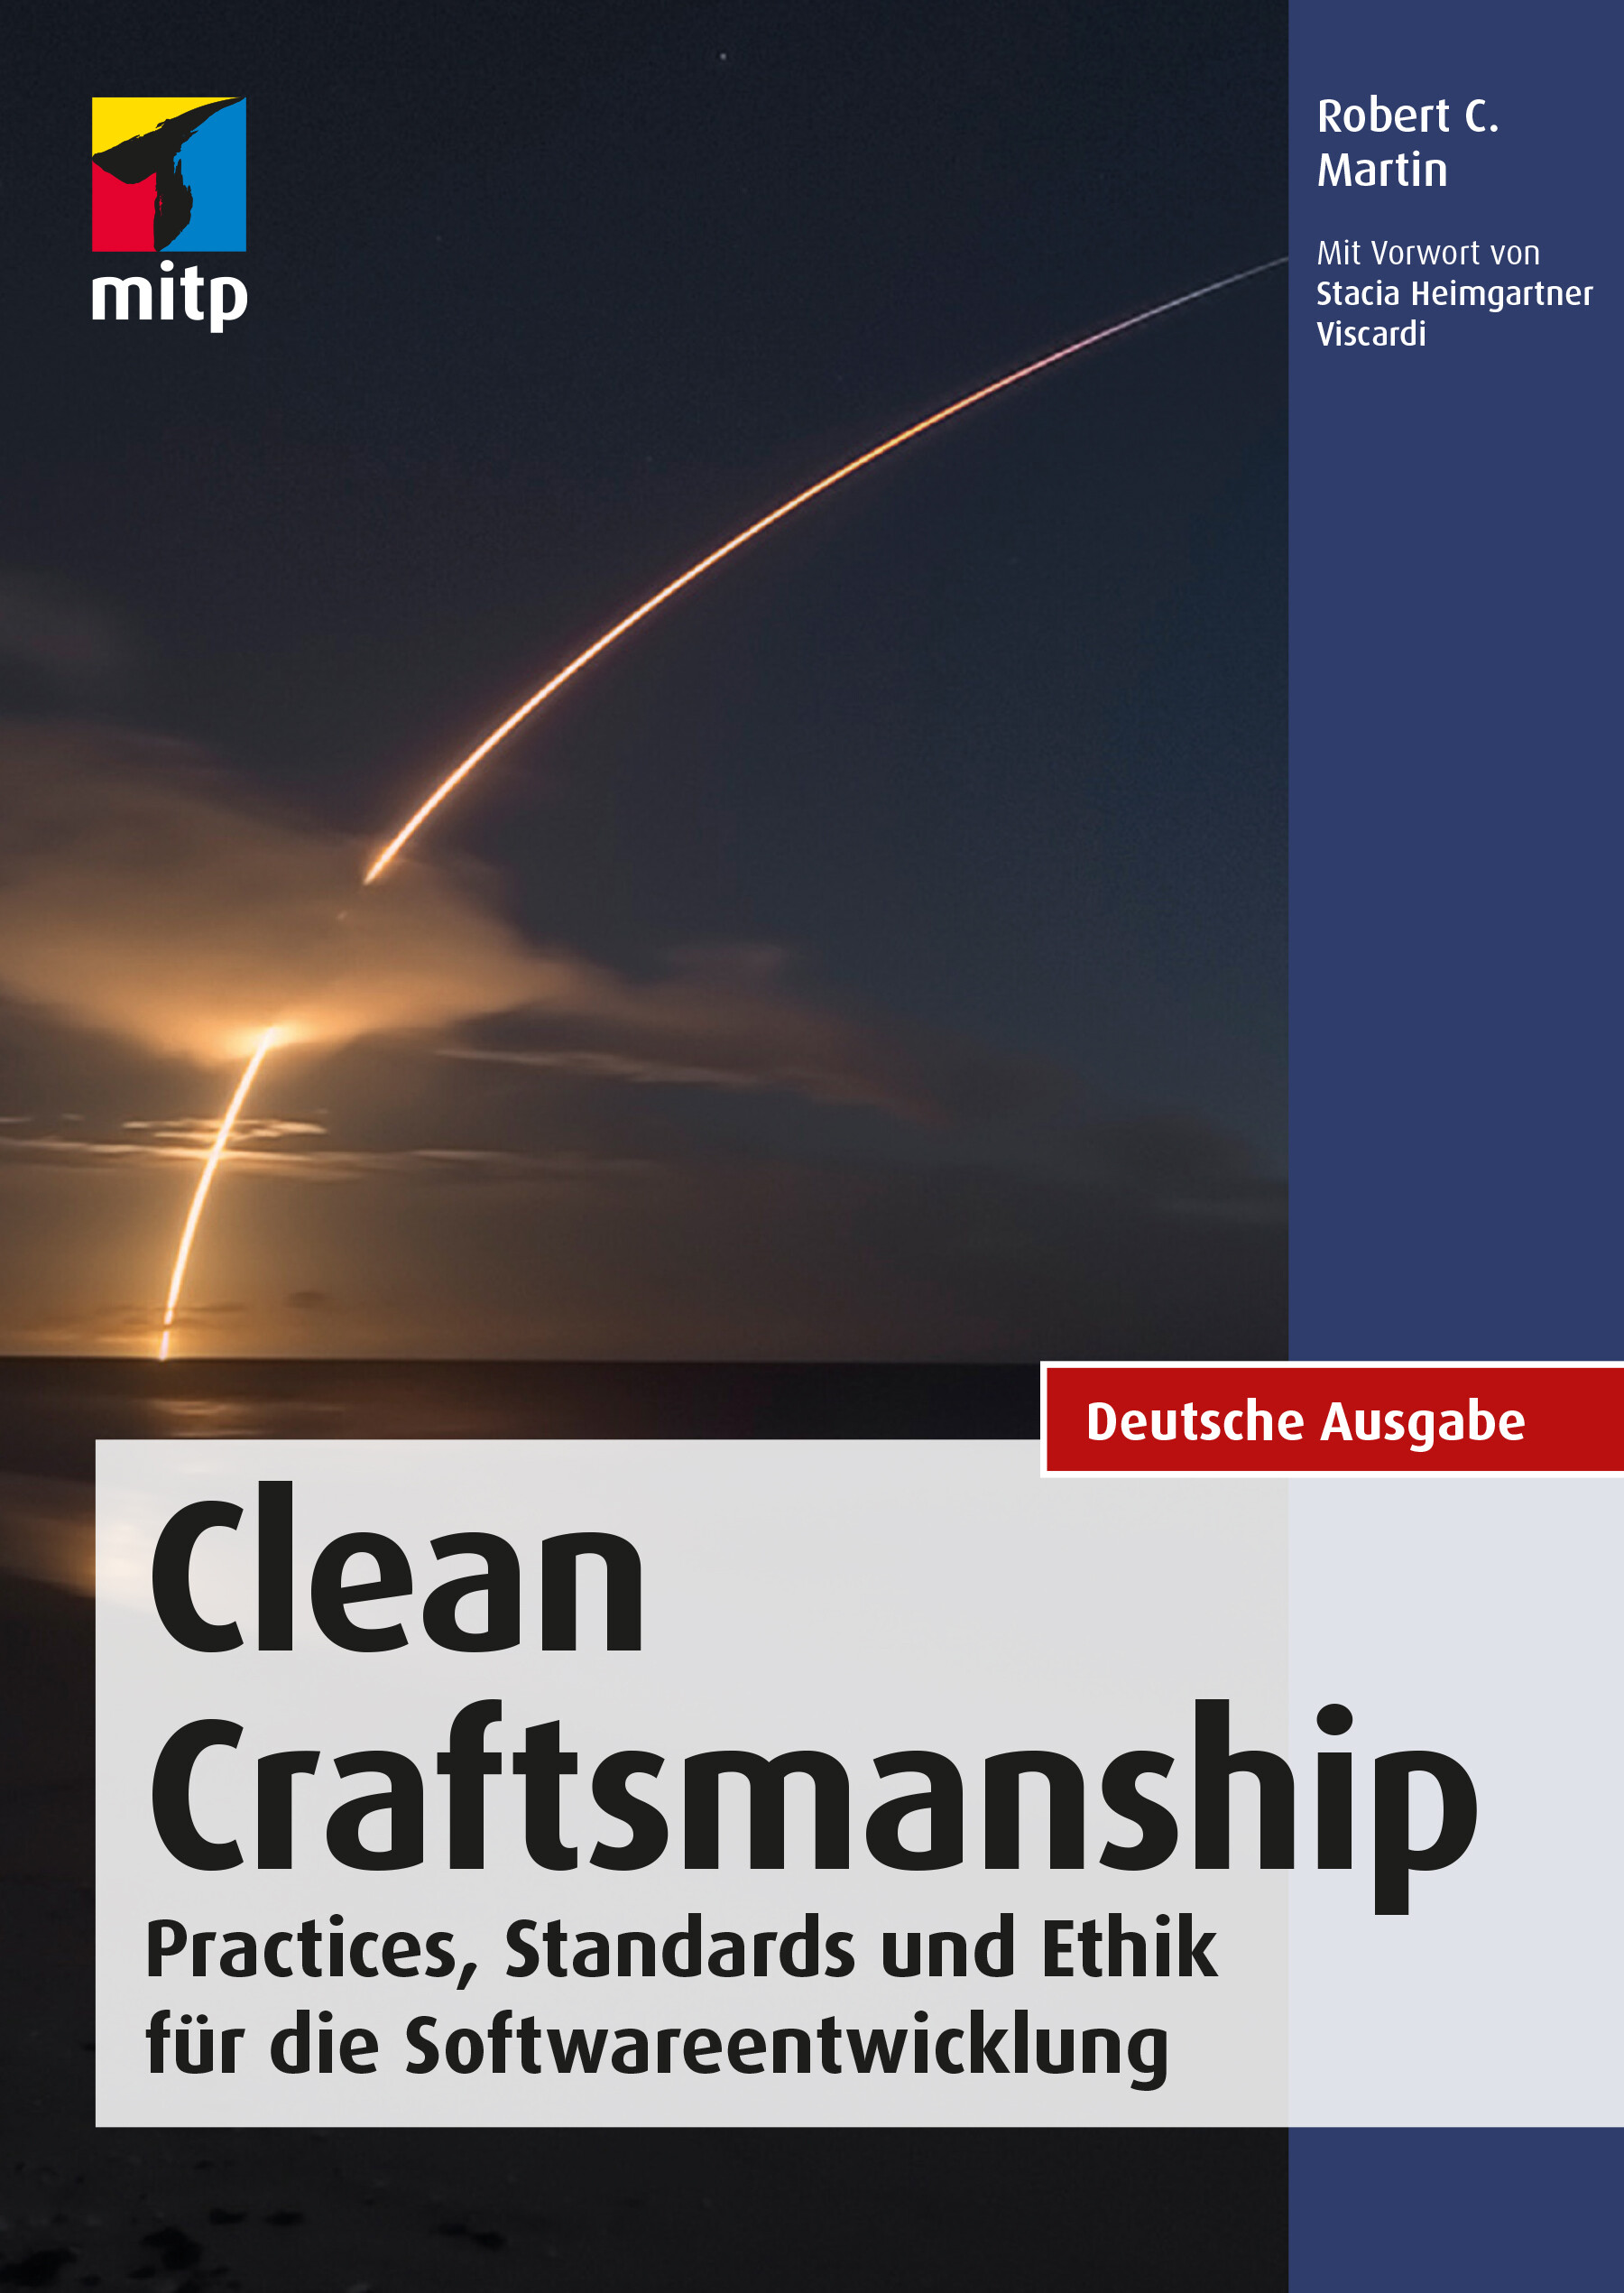 Clean Craftsmanship (Deutsche Ausgabe)